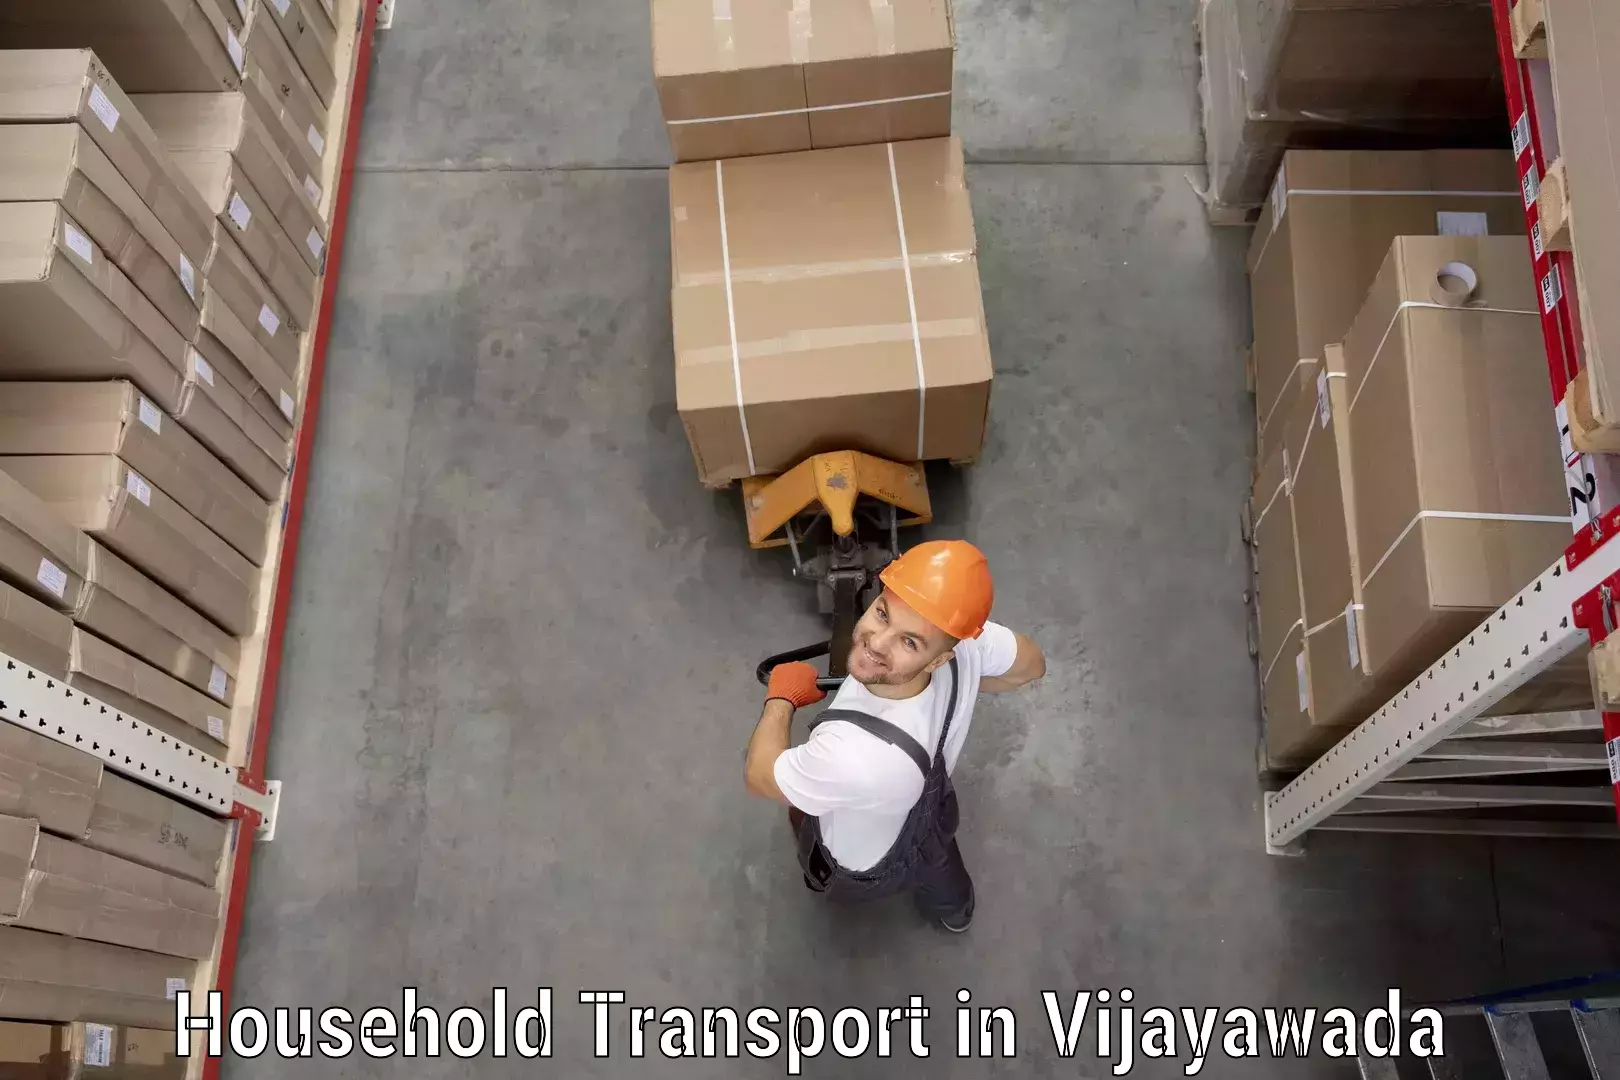 Specialized household transport in Vijayawada